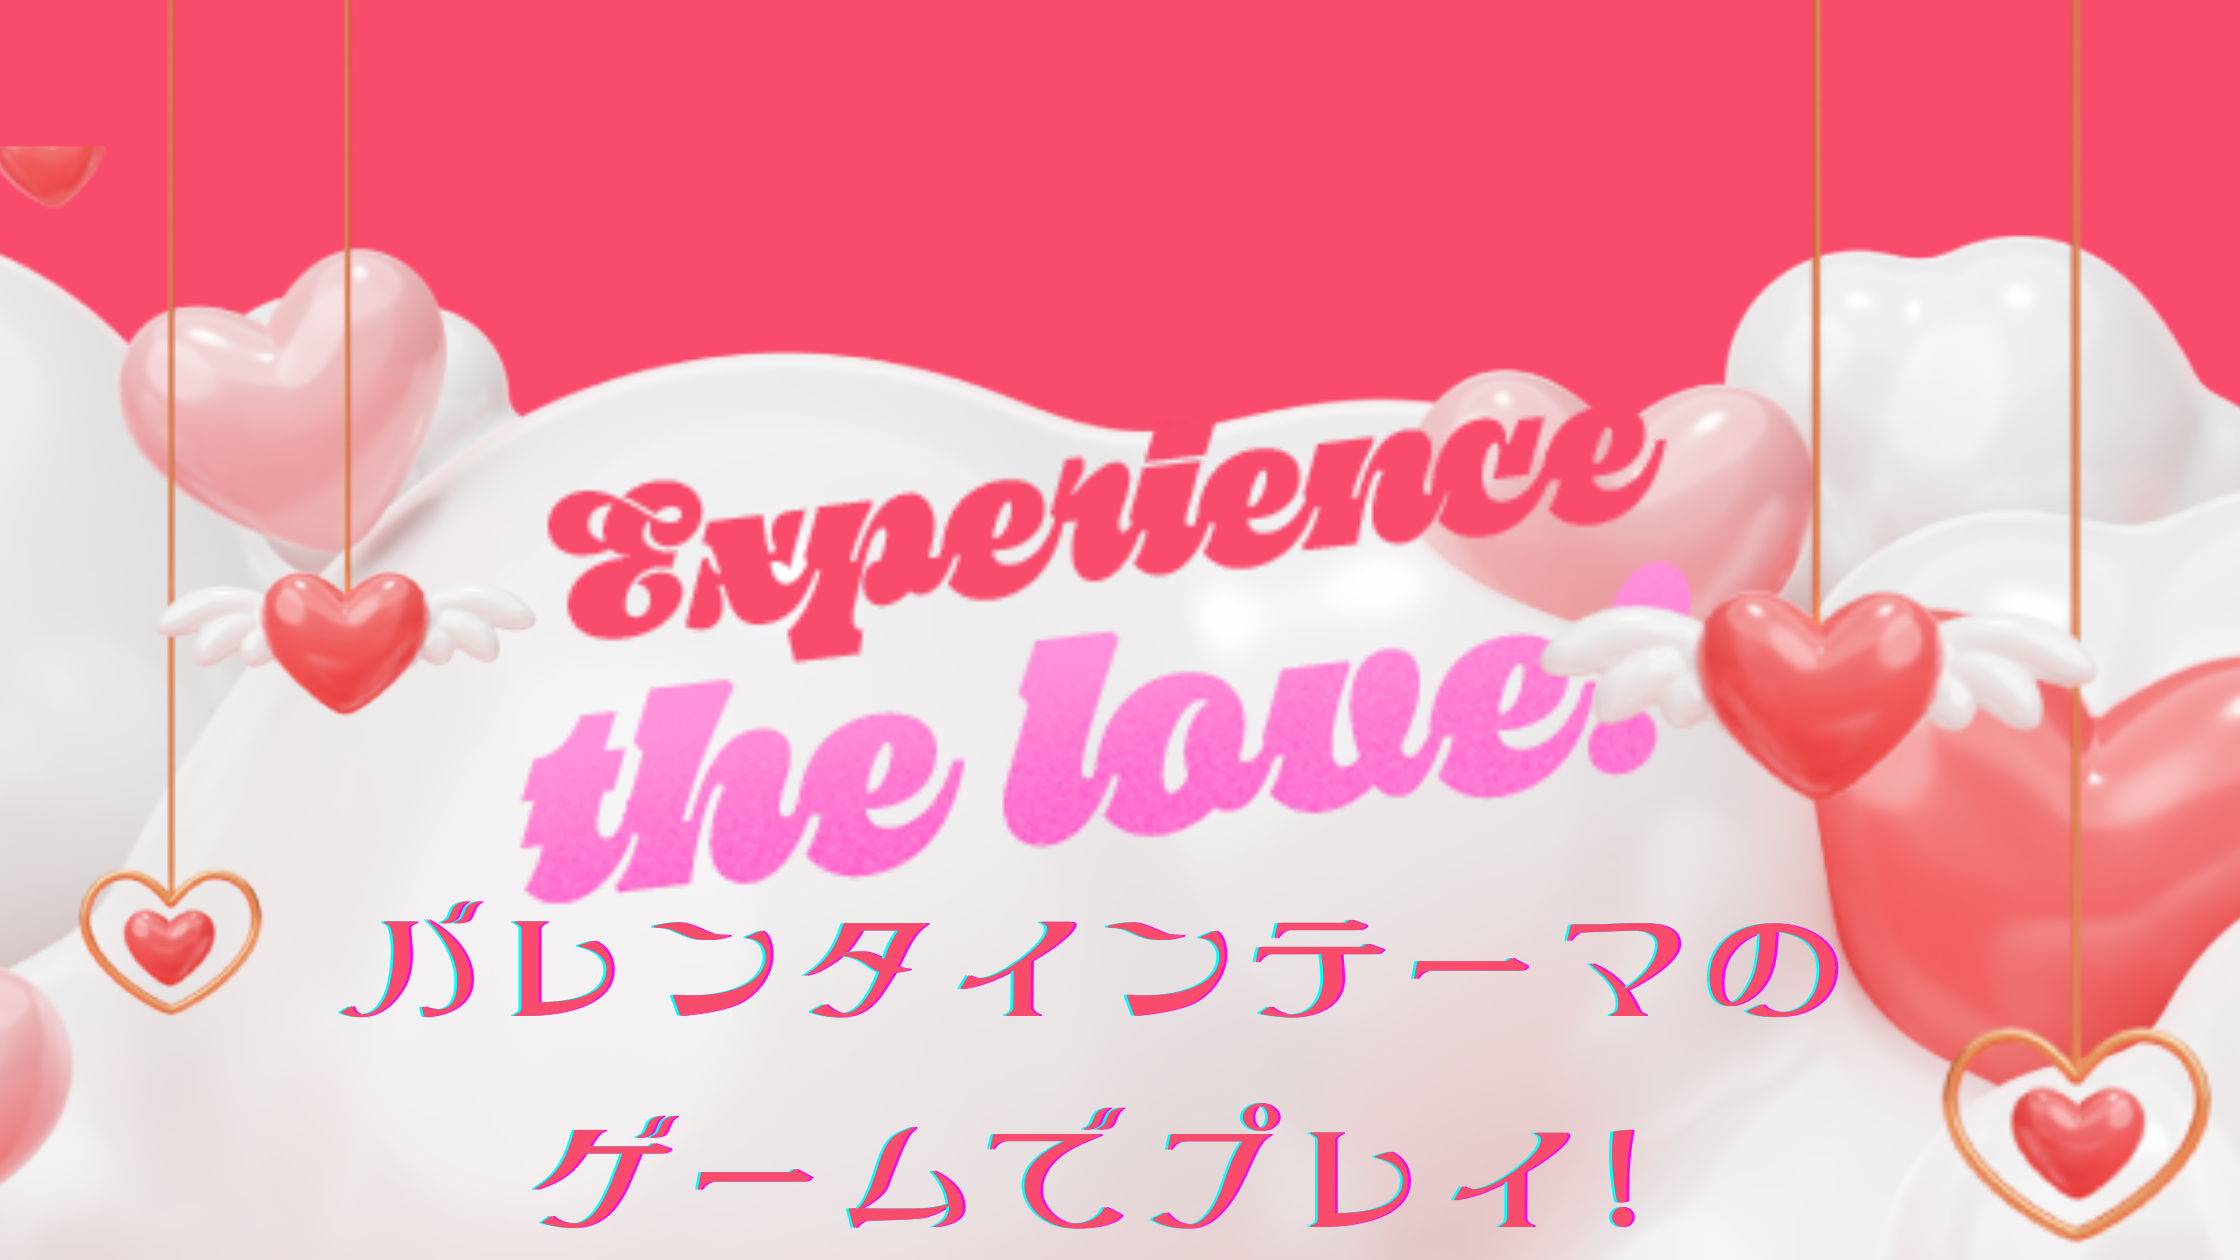 Featured image for “【プロモ】バレンタインはバレンタインゲーム”